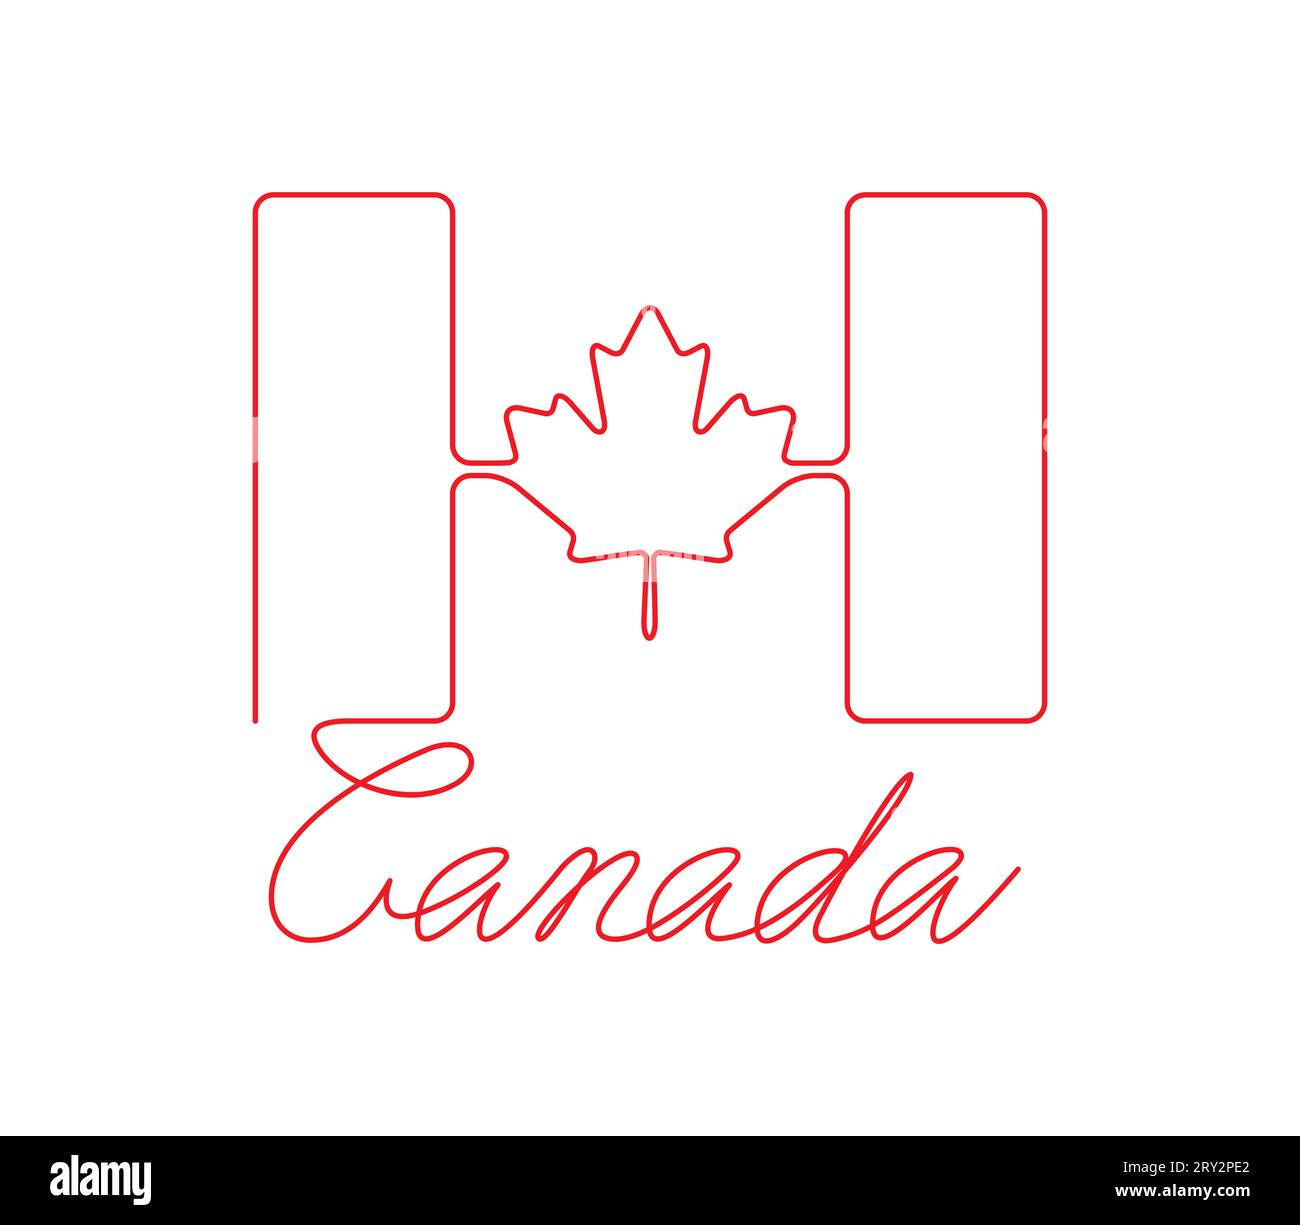 Bandiera canadese e iscrizione scritta a mano CANADA. Disegno continuo a una linea. Concetto patriottico di unità. Illustrazione Vettoriale